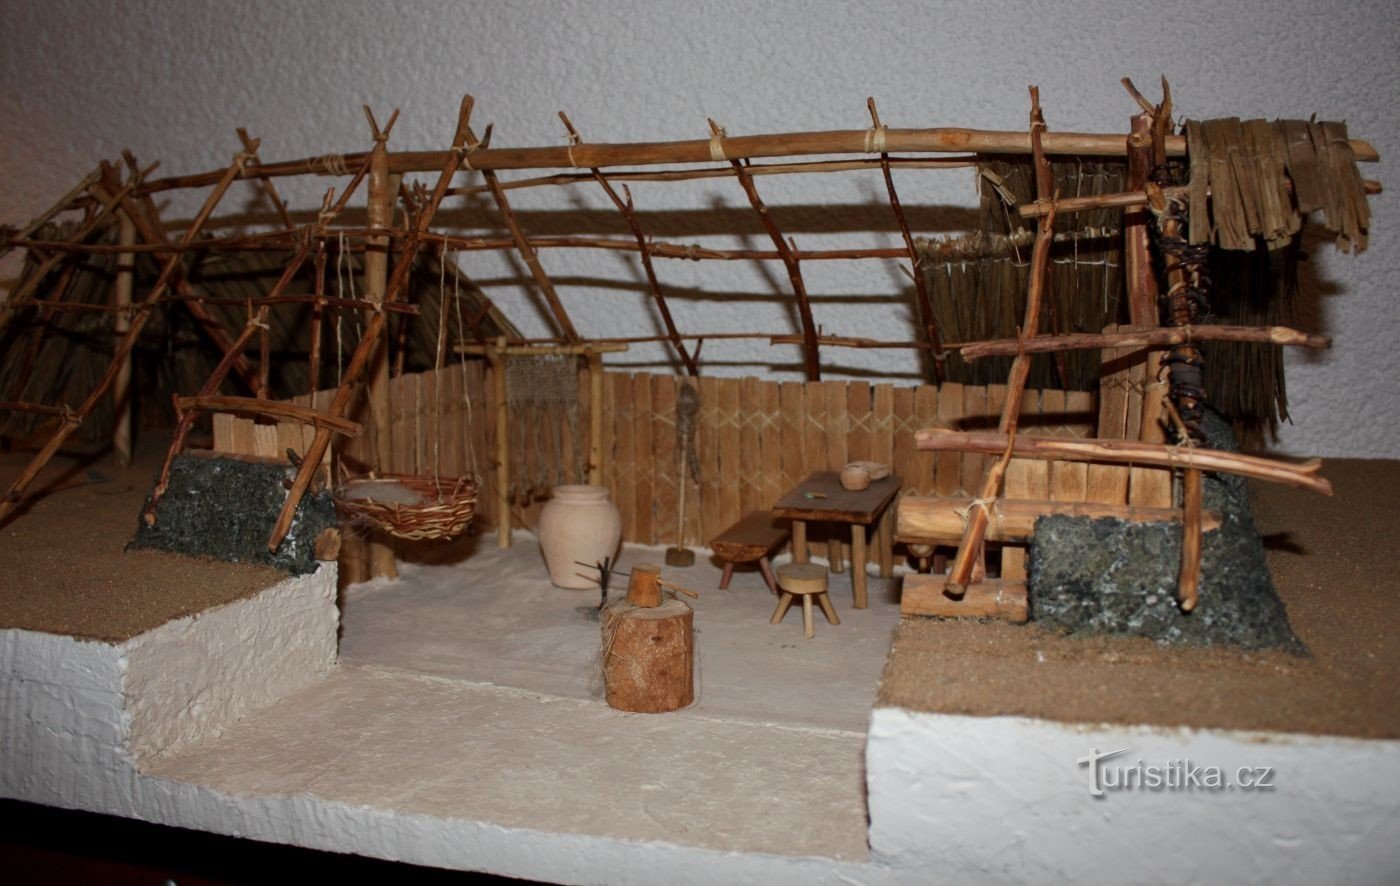 Keltenmuseum in Dobšice - Keltische Erdnuss